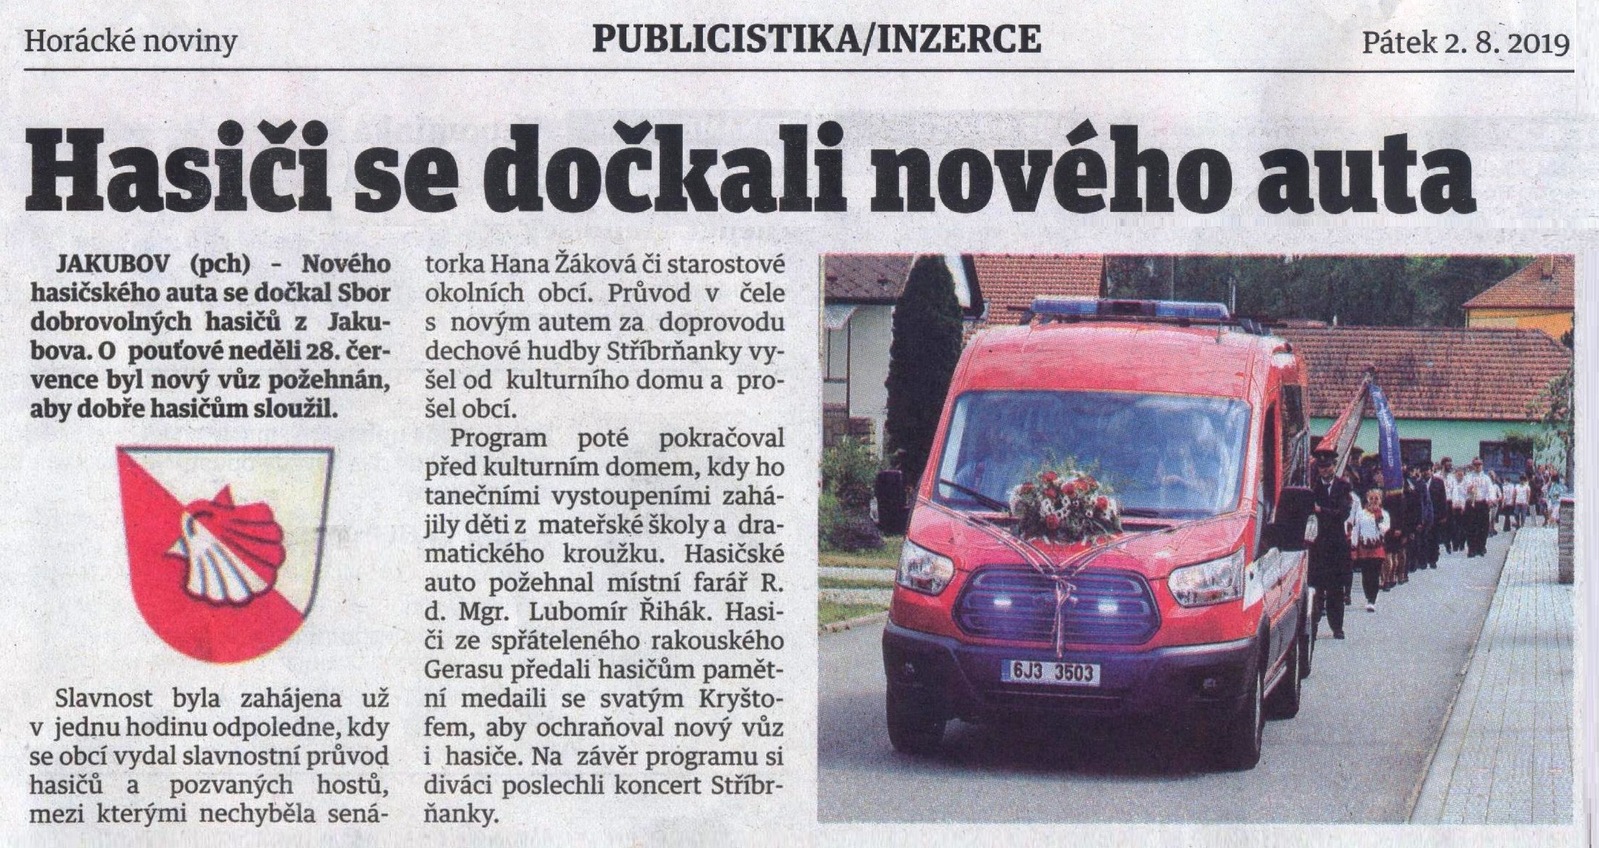 Žehnání nového auta v Horáckých novinách